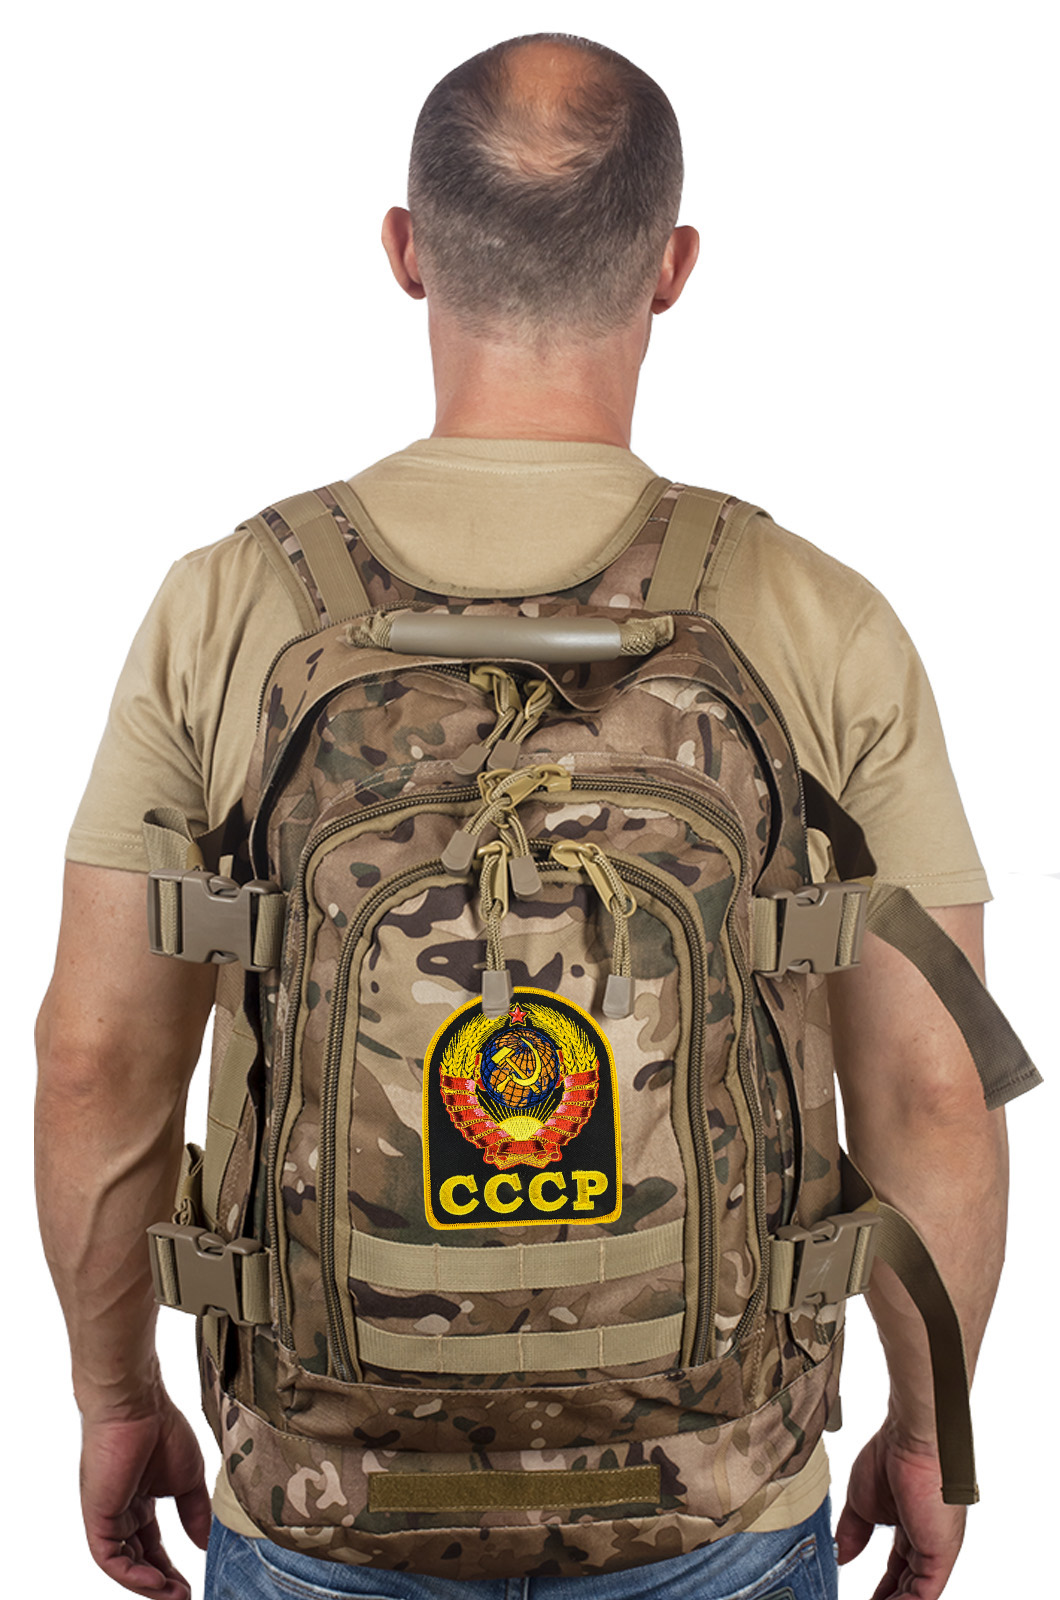 Тактический рюкзак разведчика 3-Day Expandable Backpack 08002B Multicam с эмблемой СССР 